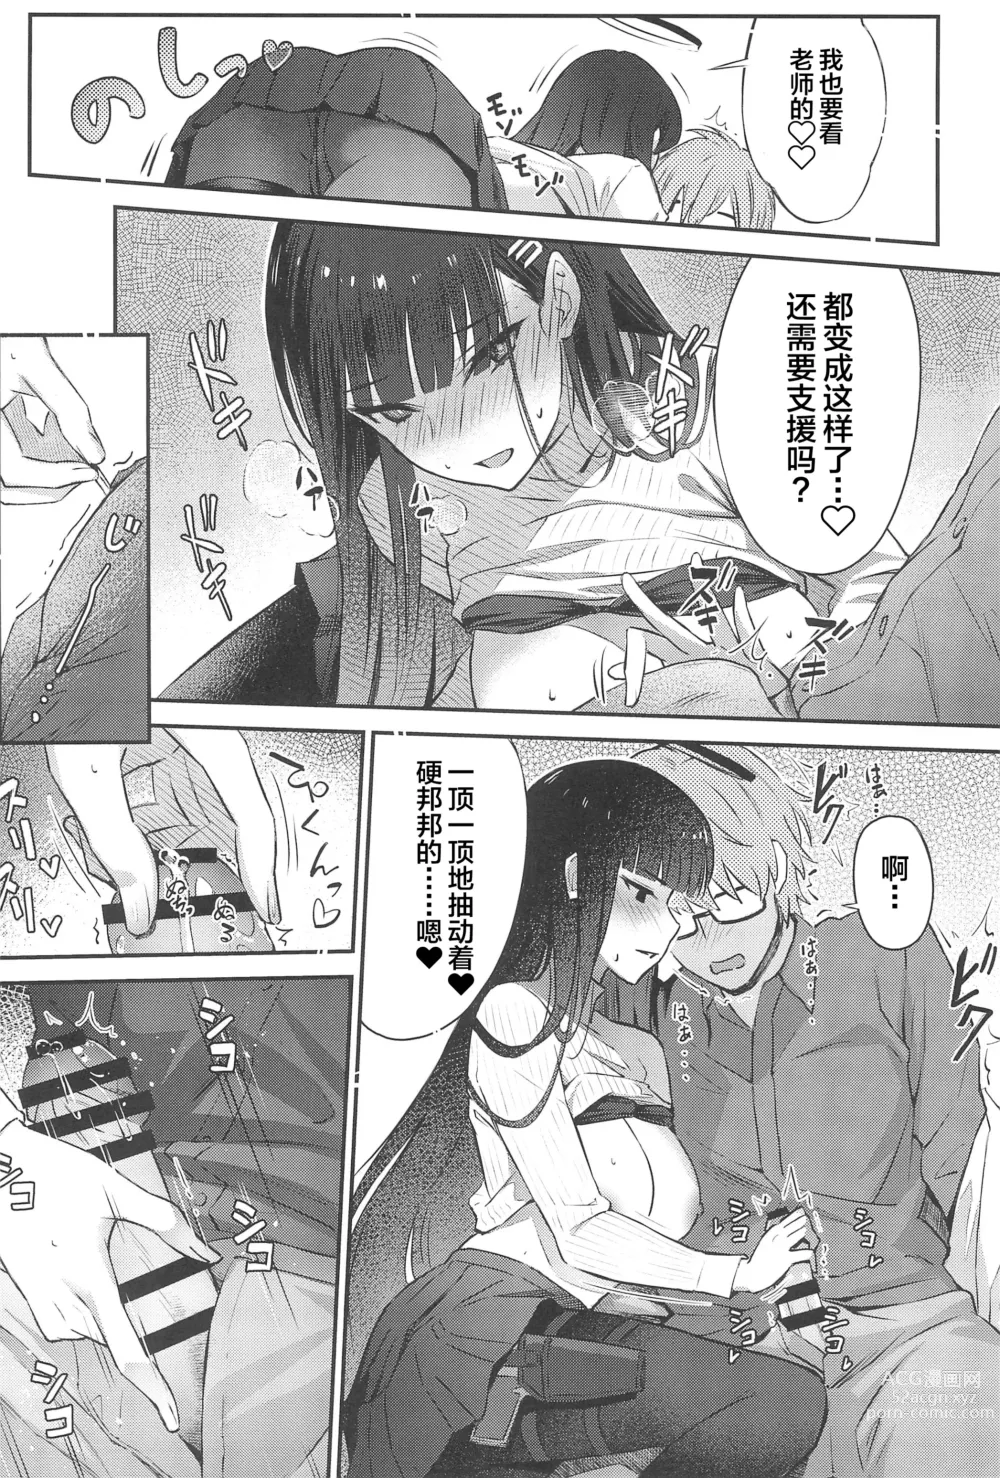 Page 15 of doujinshi Rio-chan wa Otosaretai. - Rio Want To Be Fall in Love